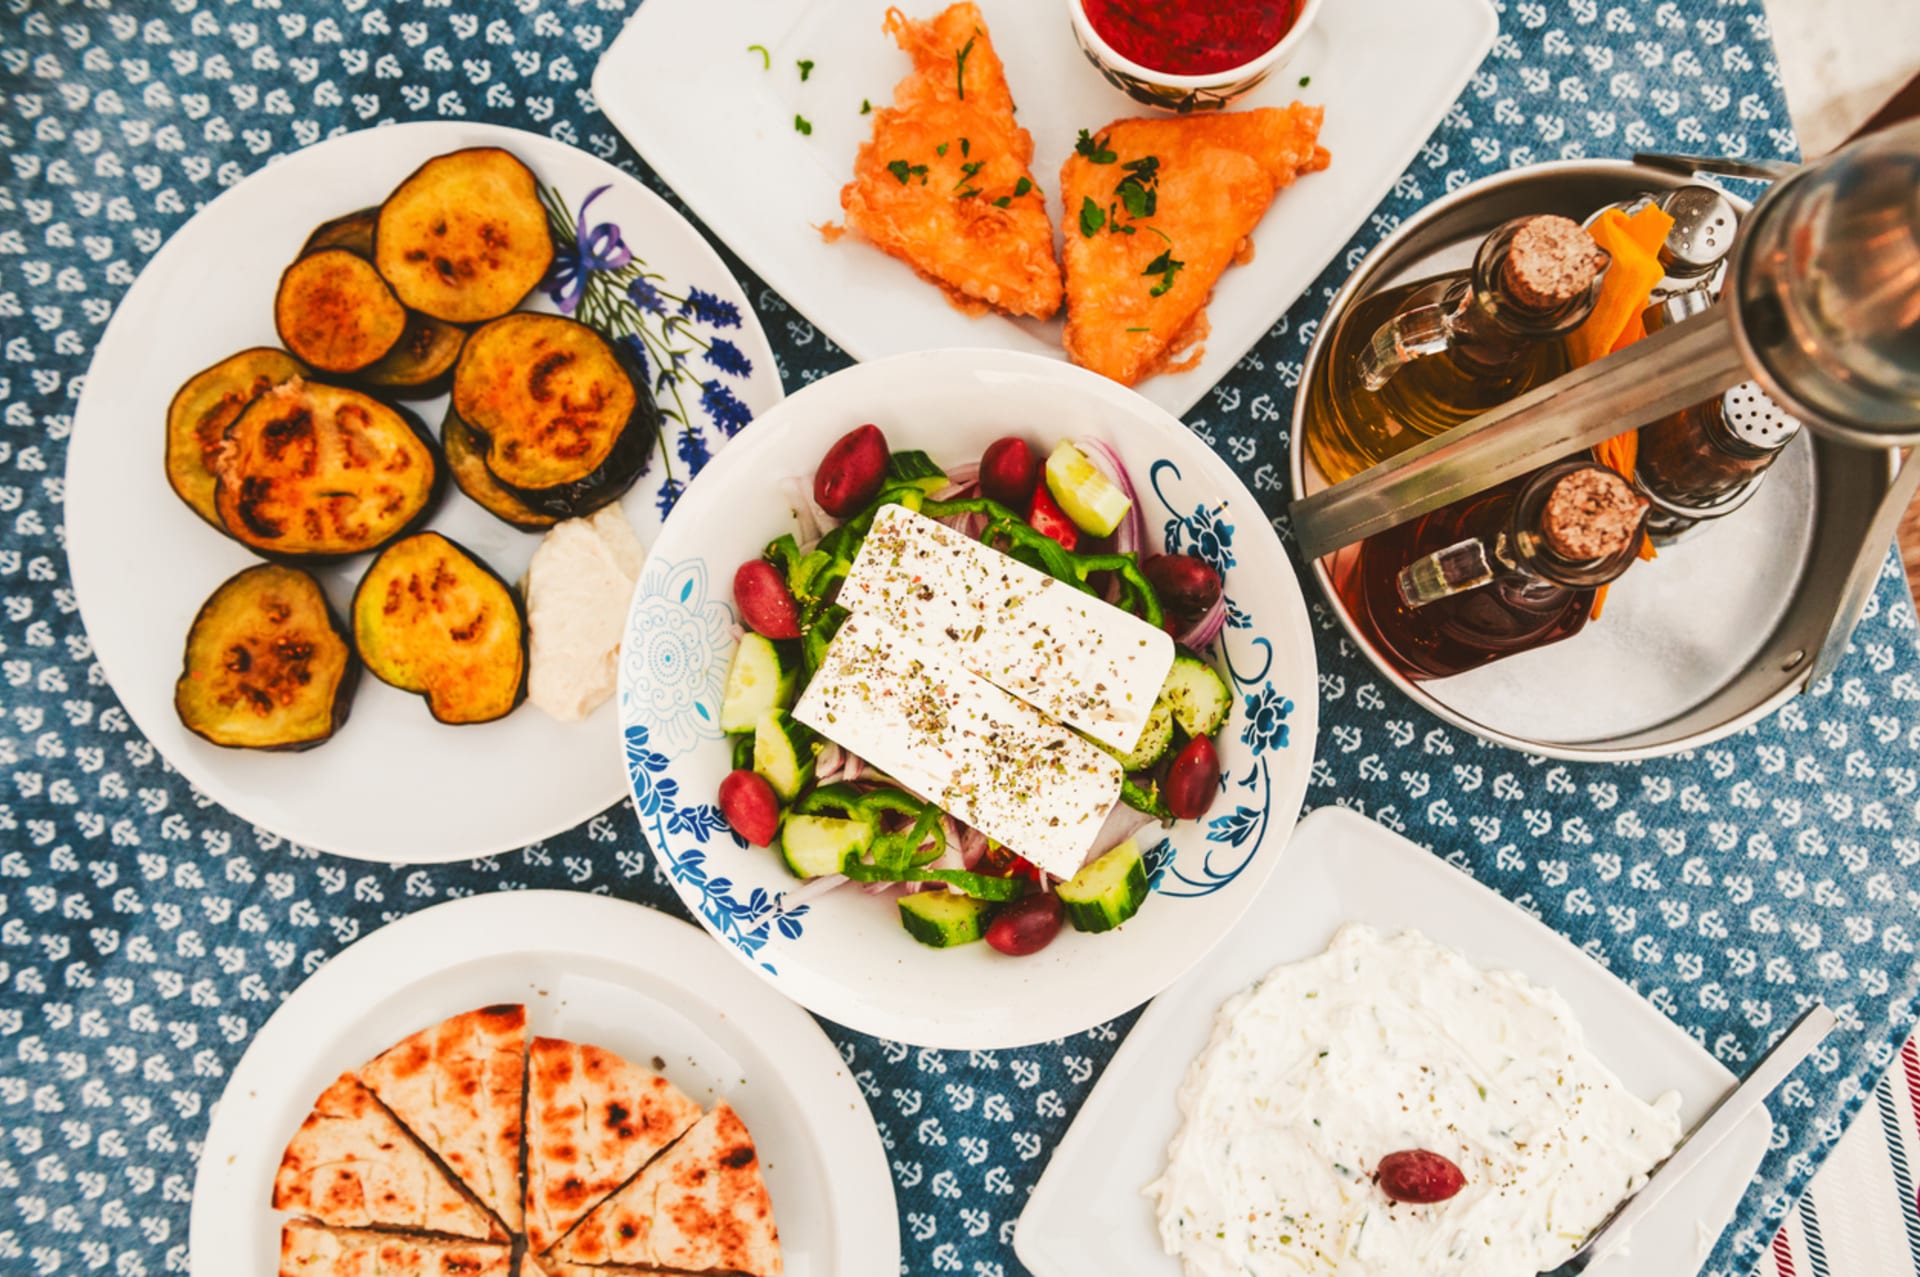 Kouzlo řecké kuchyně spočívá v její pestrosti